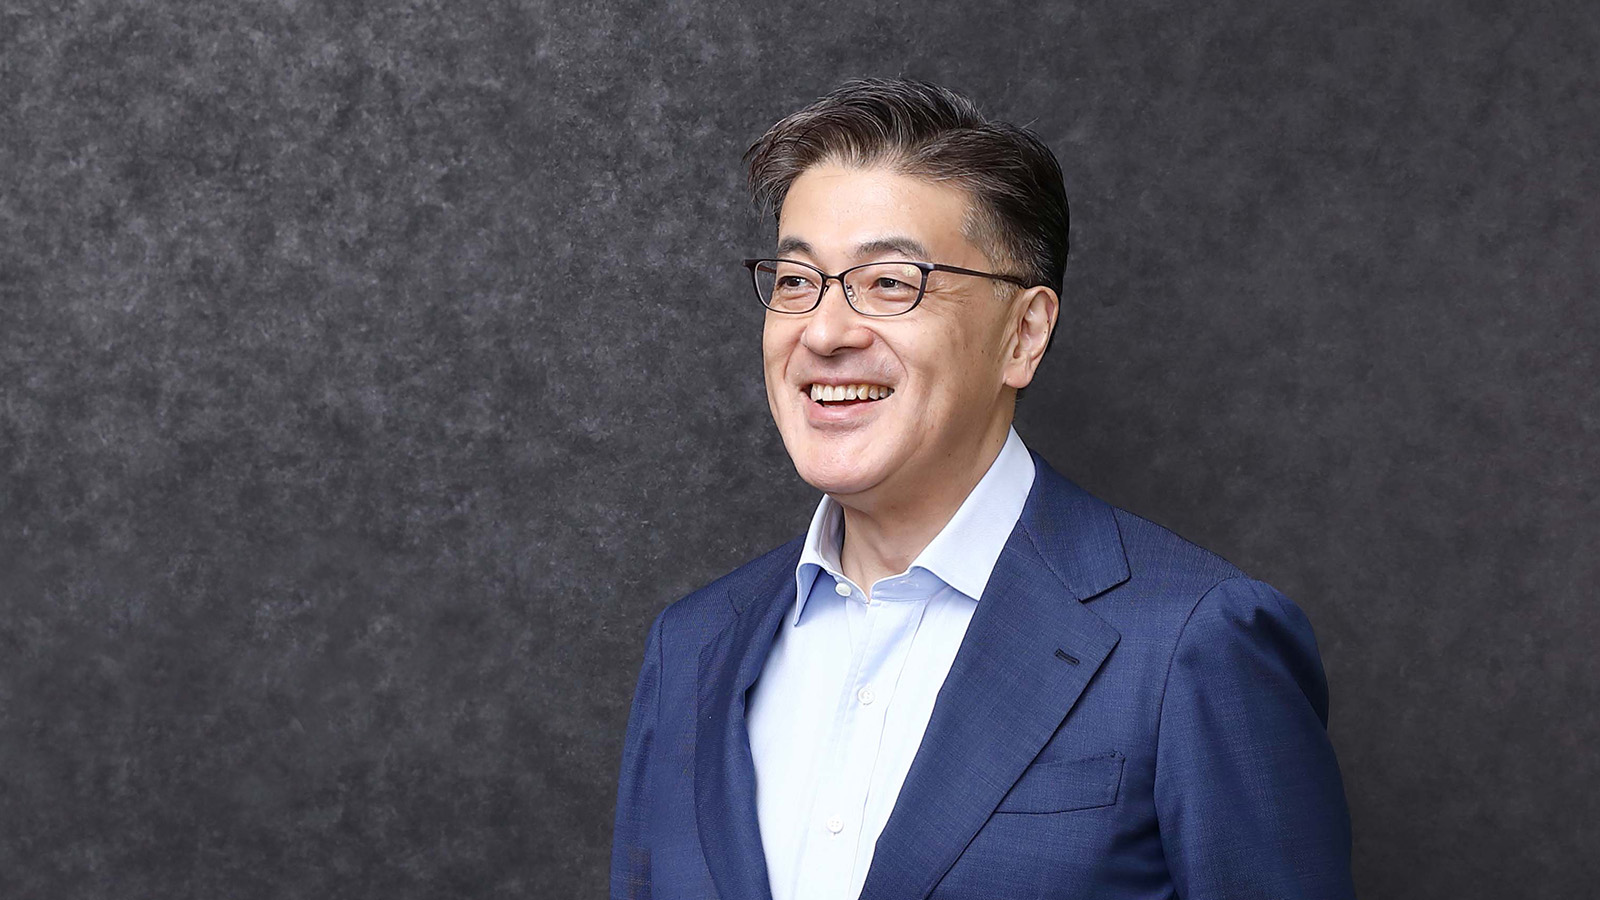 Интервью №1 с генеральным директором Panasonic Group  г-ом Кусуми: от повышения конкурентоспособности к «переходу на фазу роста» 